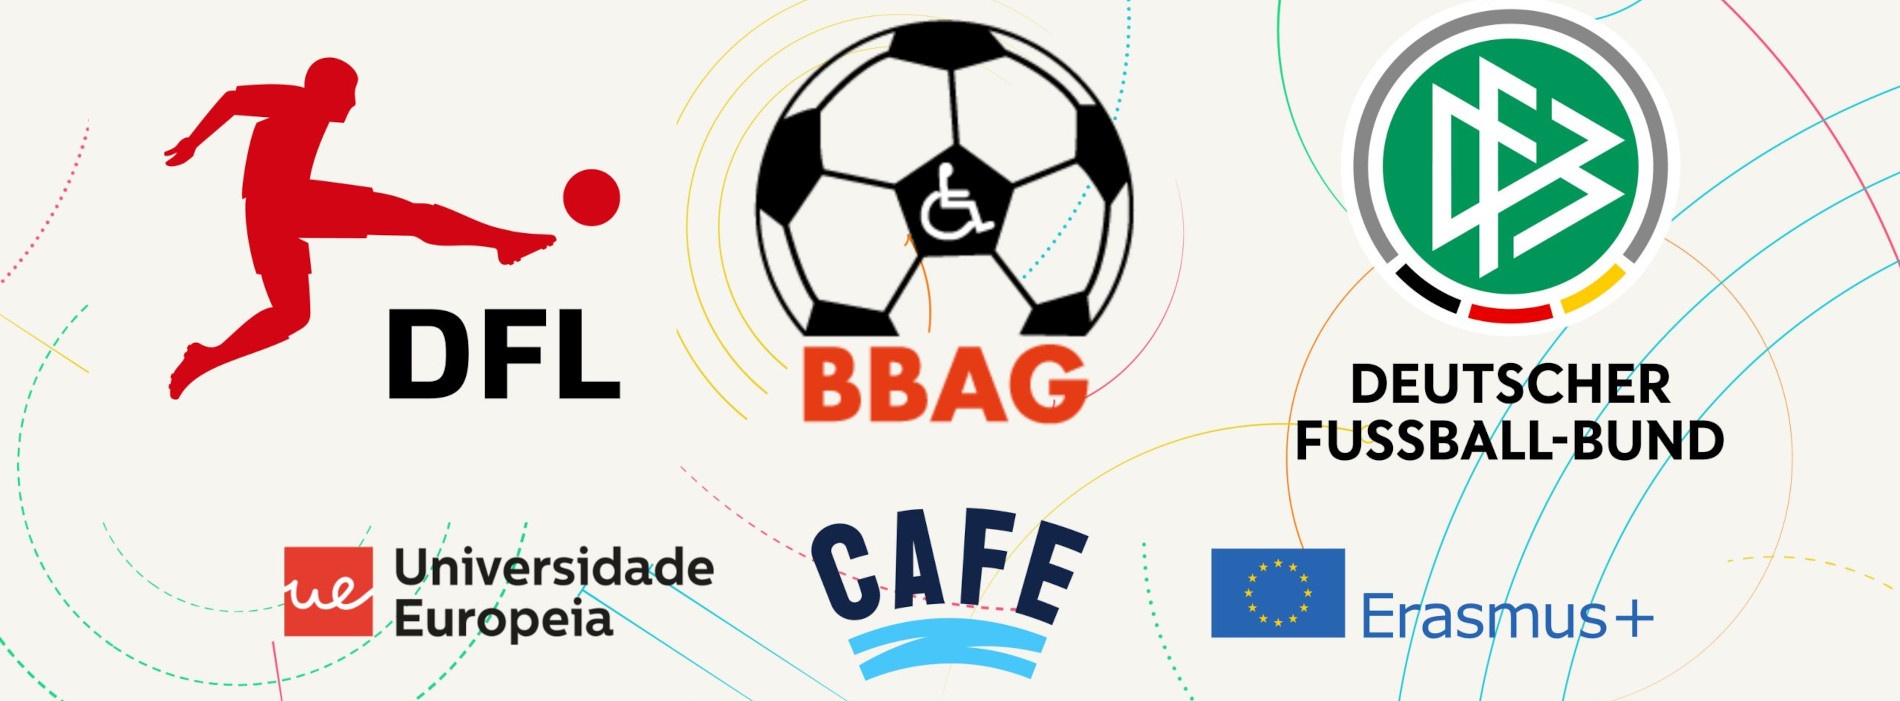 Grafik mit 6 Logos: Oben die Logos von DFL, BBAG und DFB. Darunter die Logos der Universidade Europeia sowie von CAFE und Erasmus+.